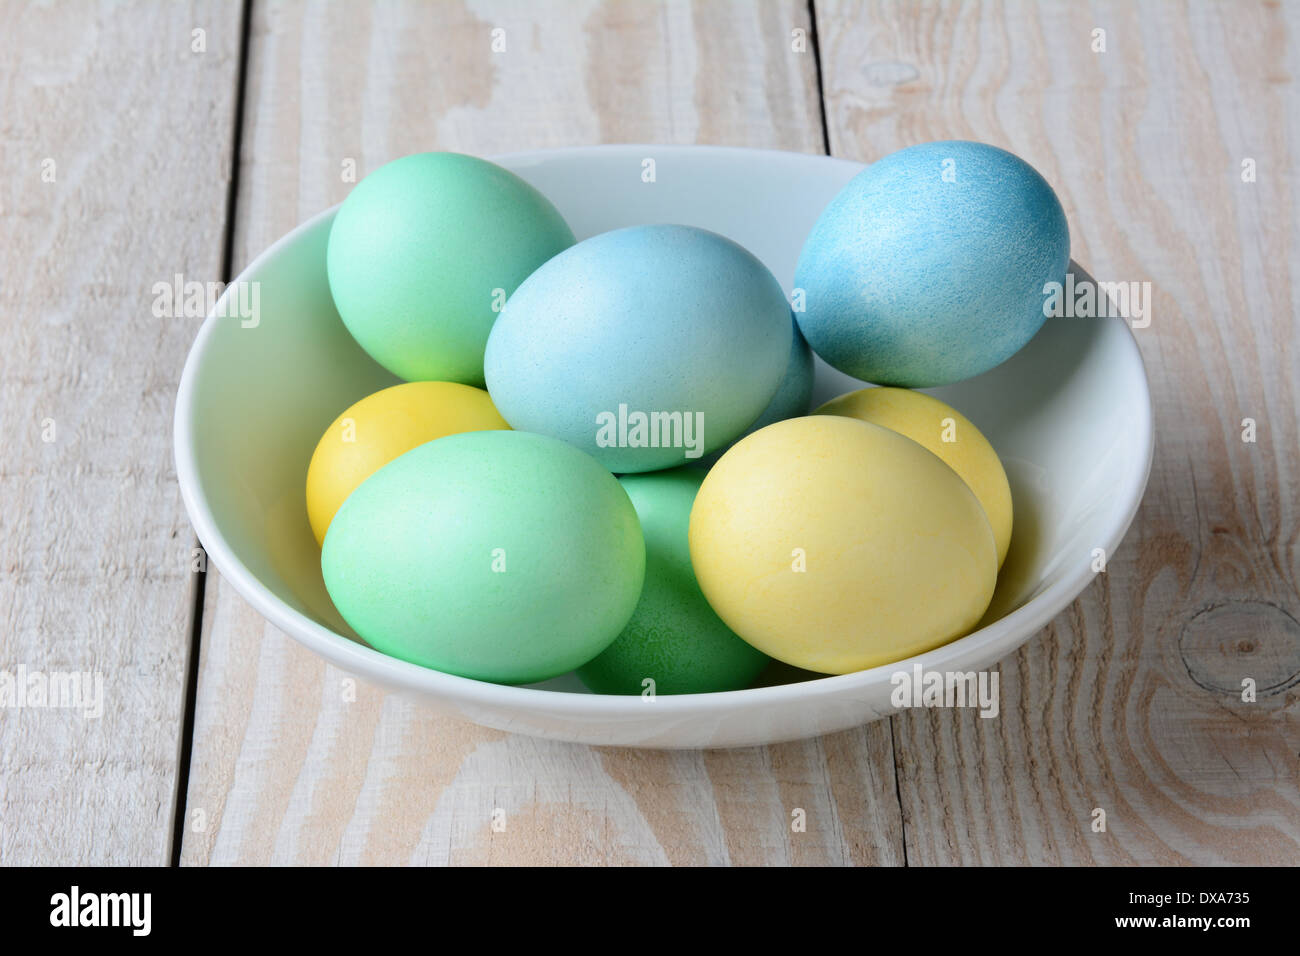 Un alto ángulo de visualización de un tazón de pastel de huevos de Pascua. El tazón blanco está lleno de amarillo, verde y azul huevos teñidos Foto de stock